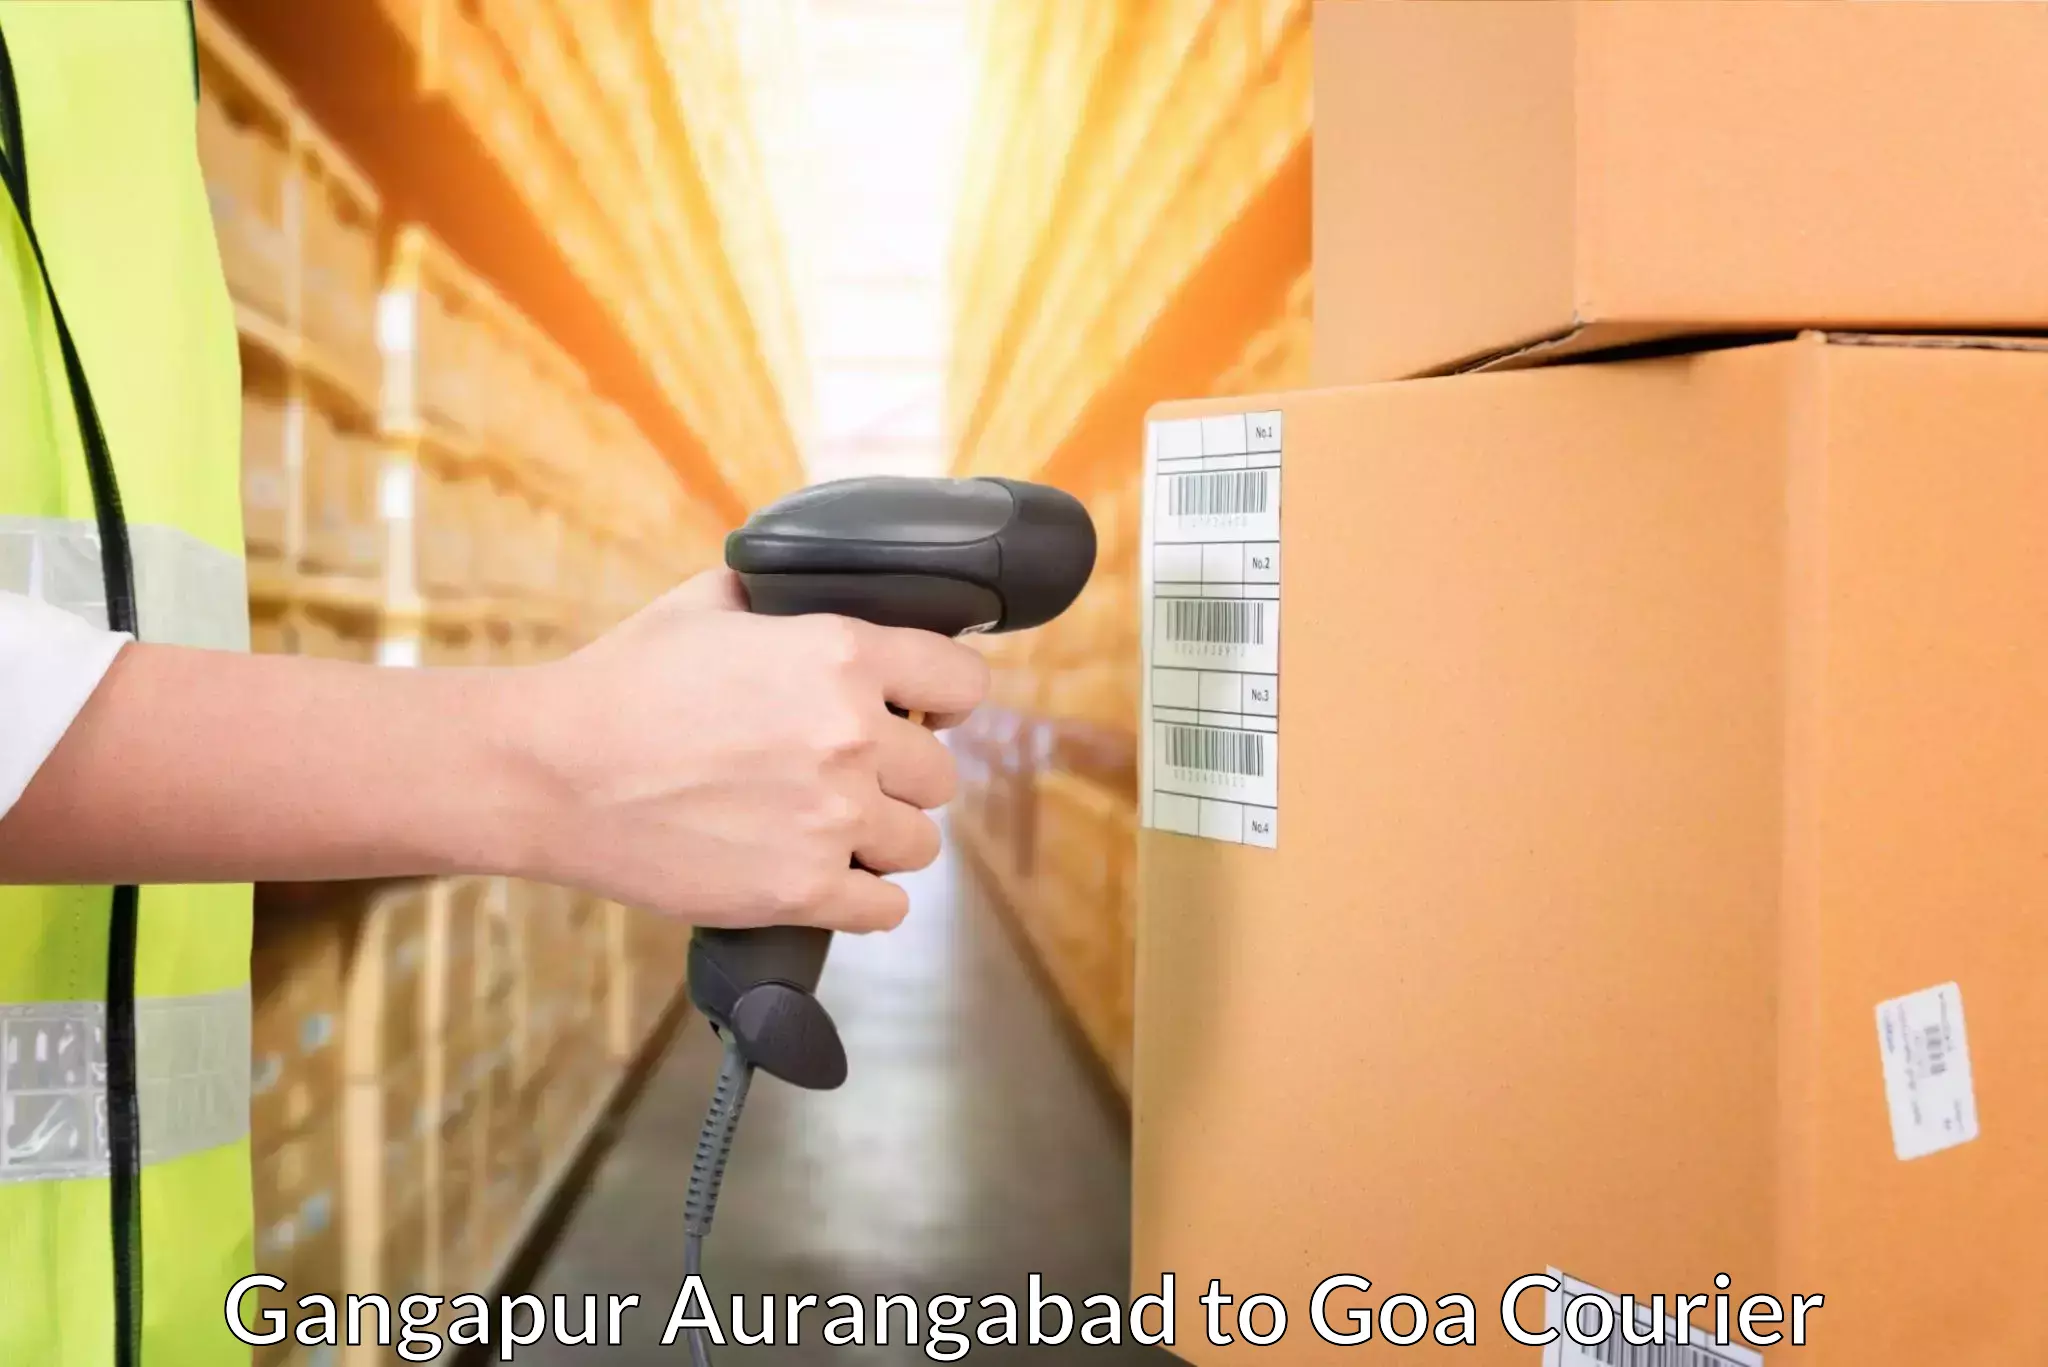 Courier service comparison Gangapur Aurangabad to Bardez